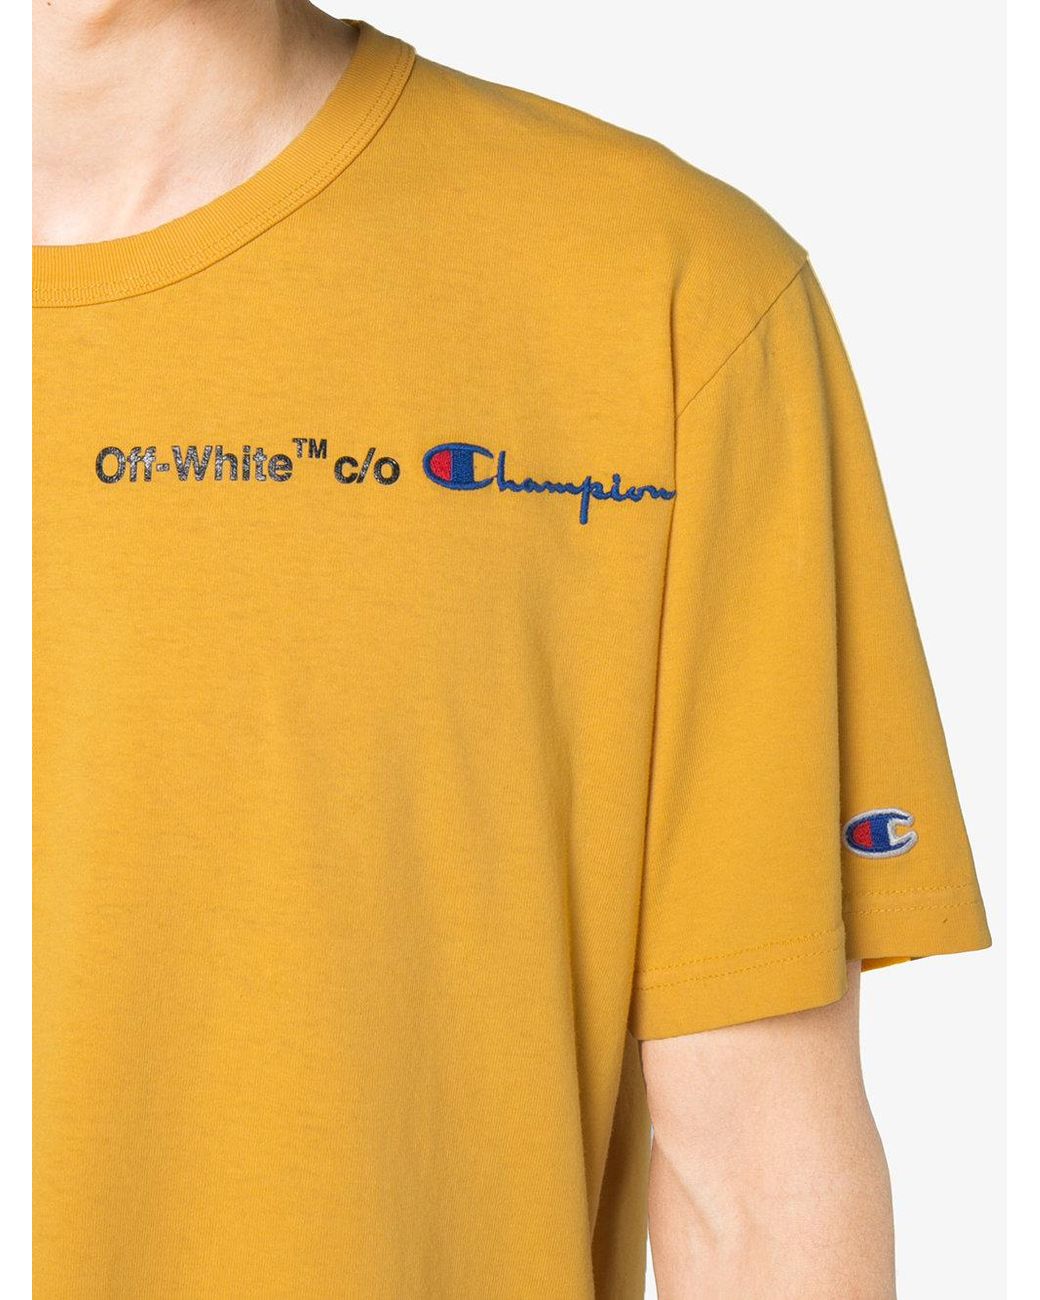 Off-White c/o Virgil Abloh X Champion T-shirt for Men Lyst